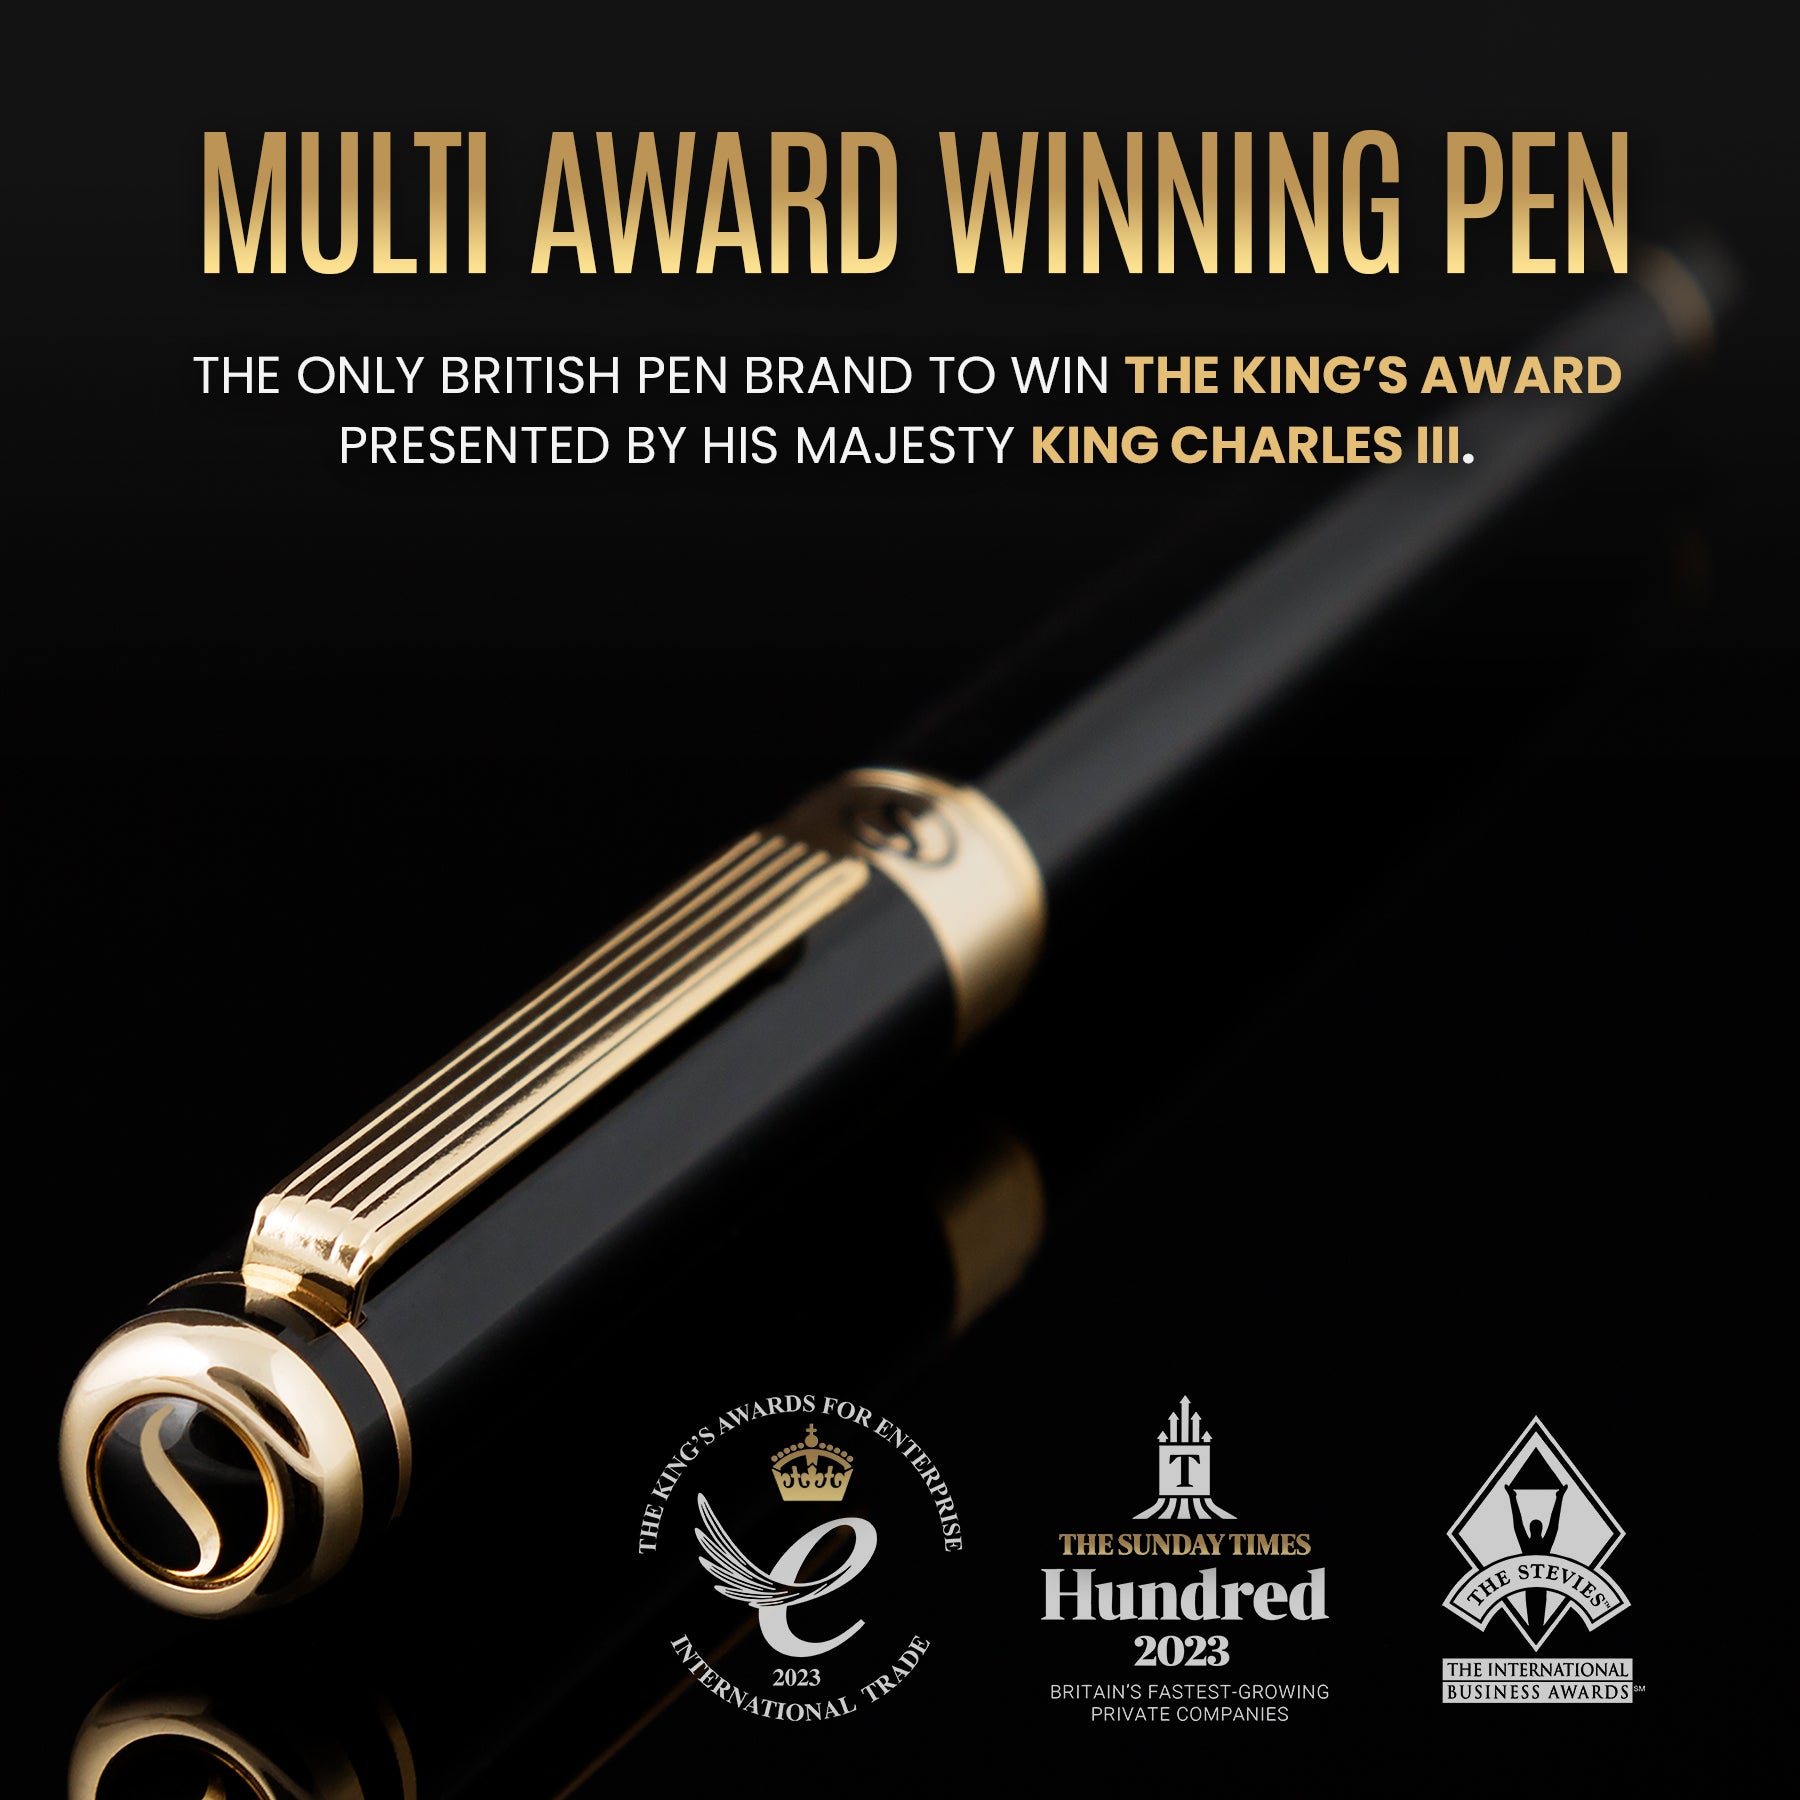 Scriveiner Classic Black Lacquer fountain Pen - Medium Nib